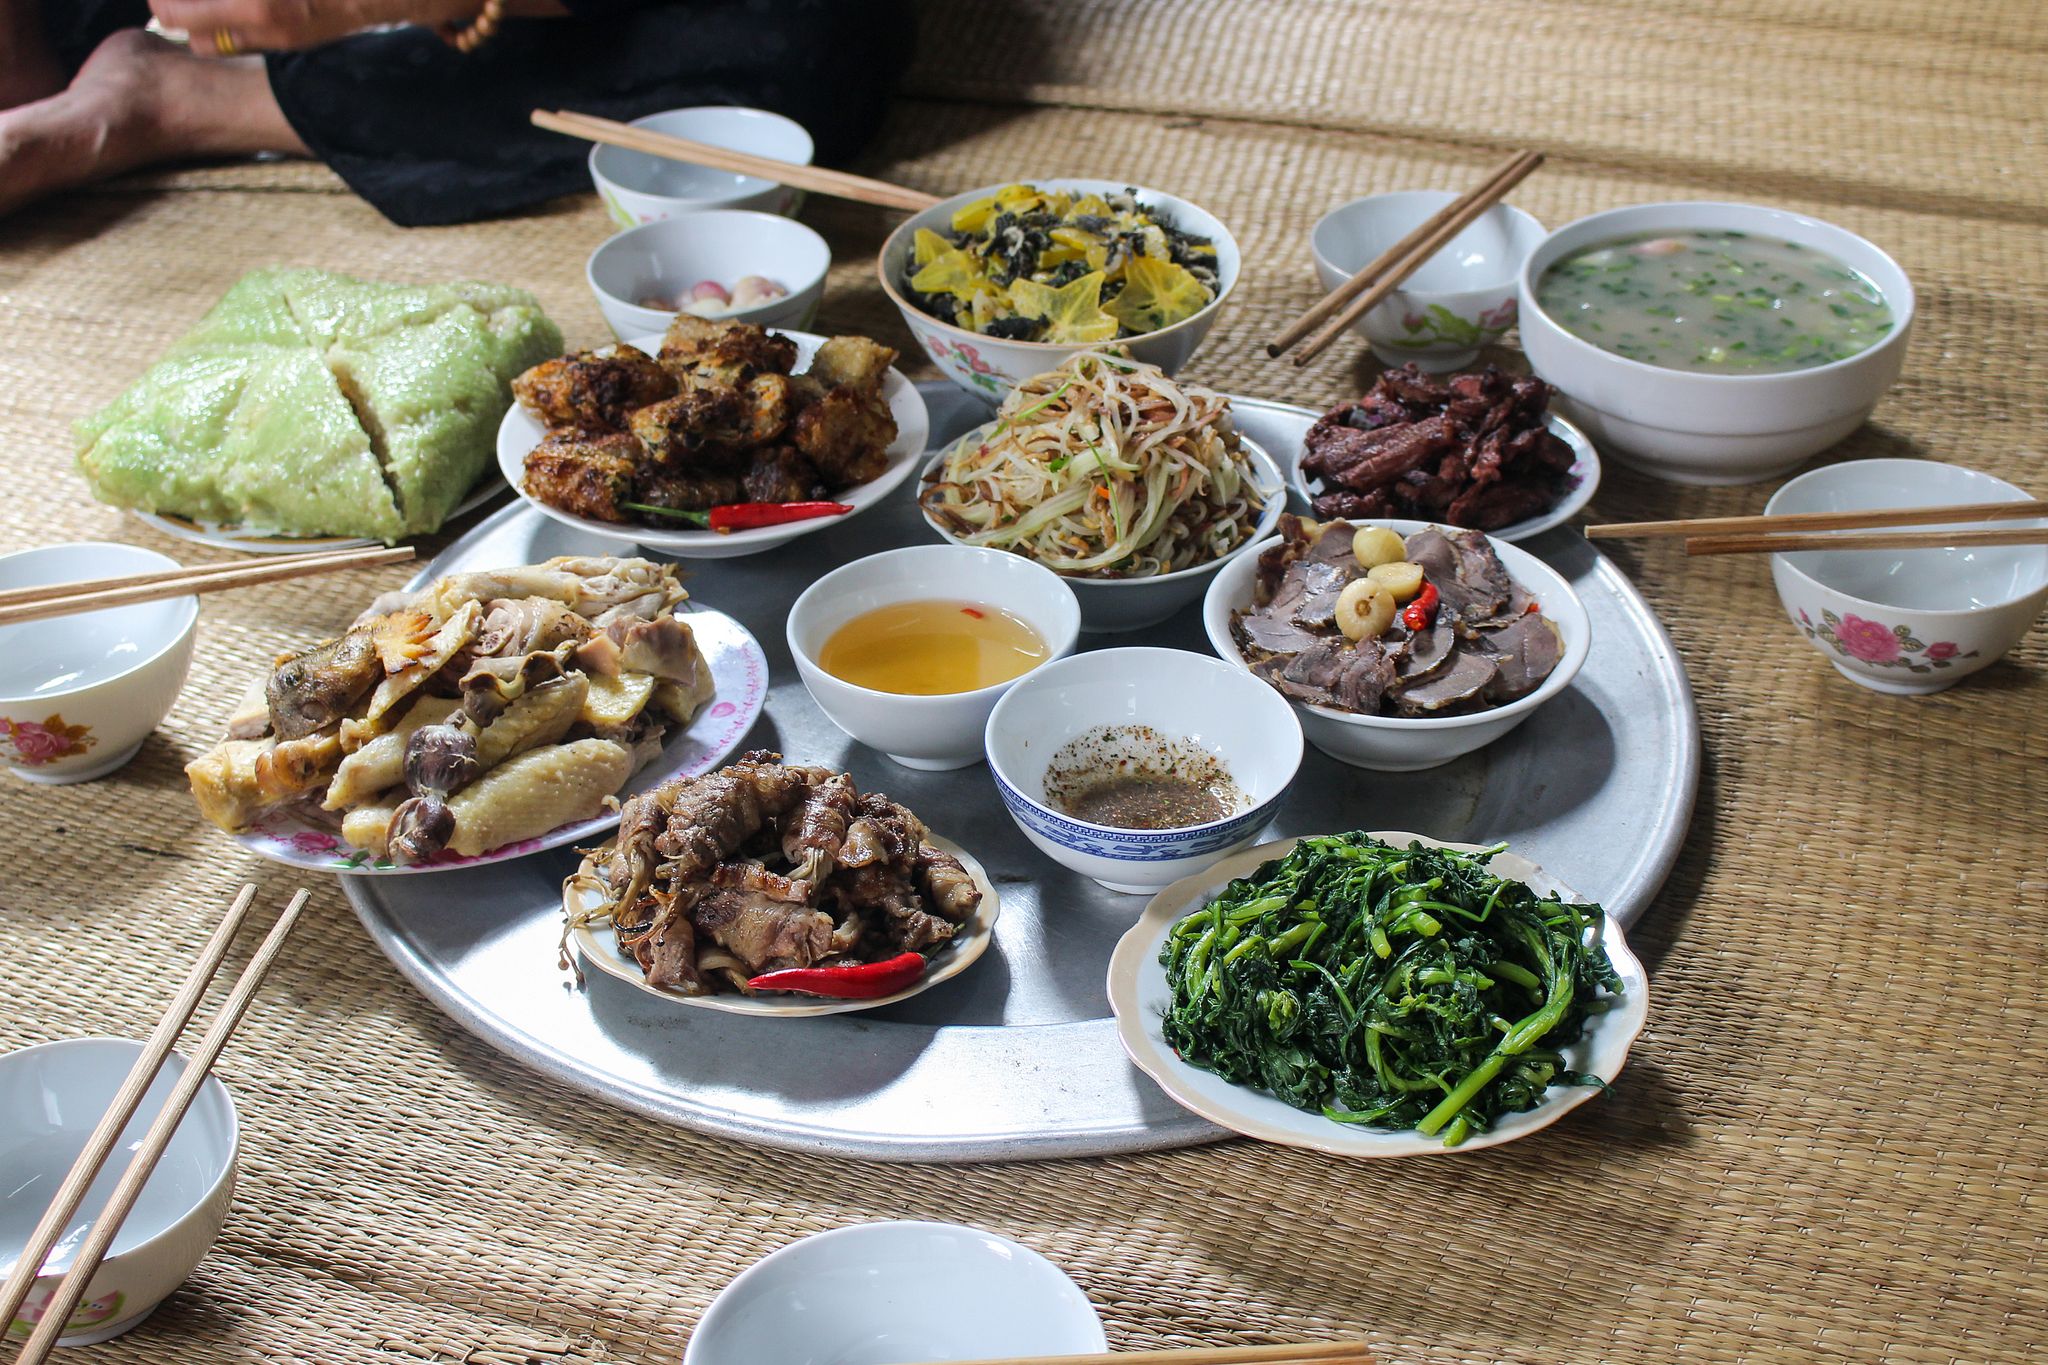 Những hình ảnh về cái mâm và bữa cơm Việt làm cho con người ta cảm thấy ấm cúng, kết nối, đầy hạnh phúc. Hãy đến để tận hưởng hình ảnh đó và tìm hiểu về nghệ thuật bài trí mâm cơm Việt hoặc các món ăn đặc trưng của Việt Nam.